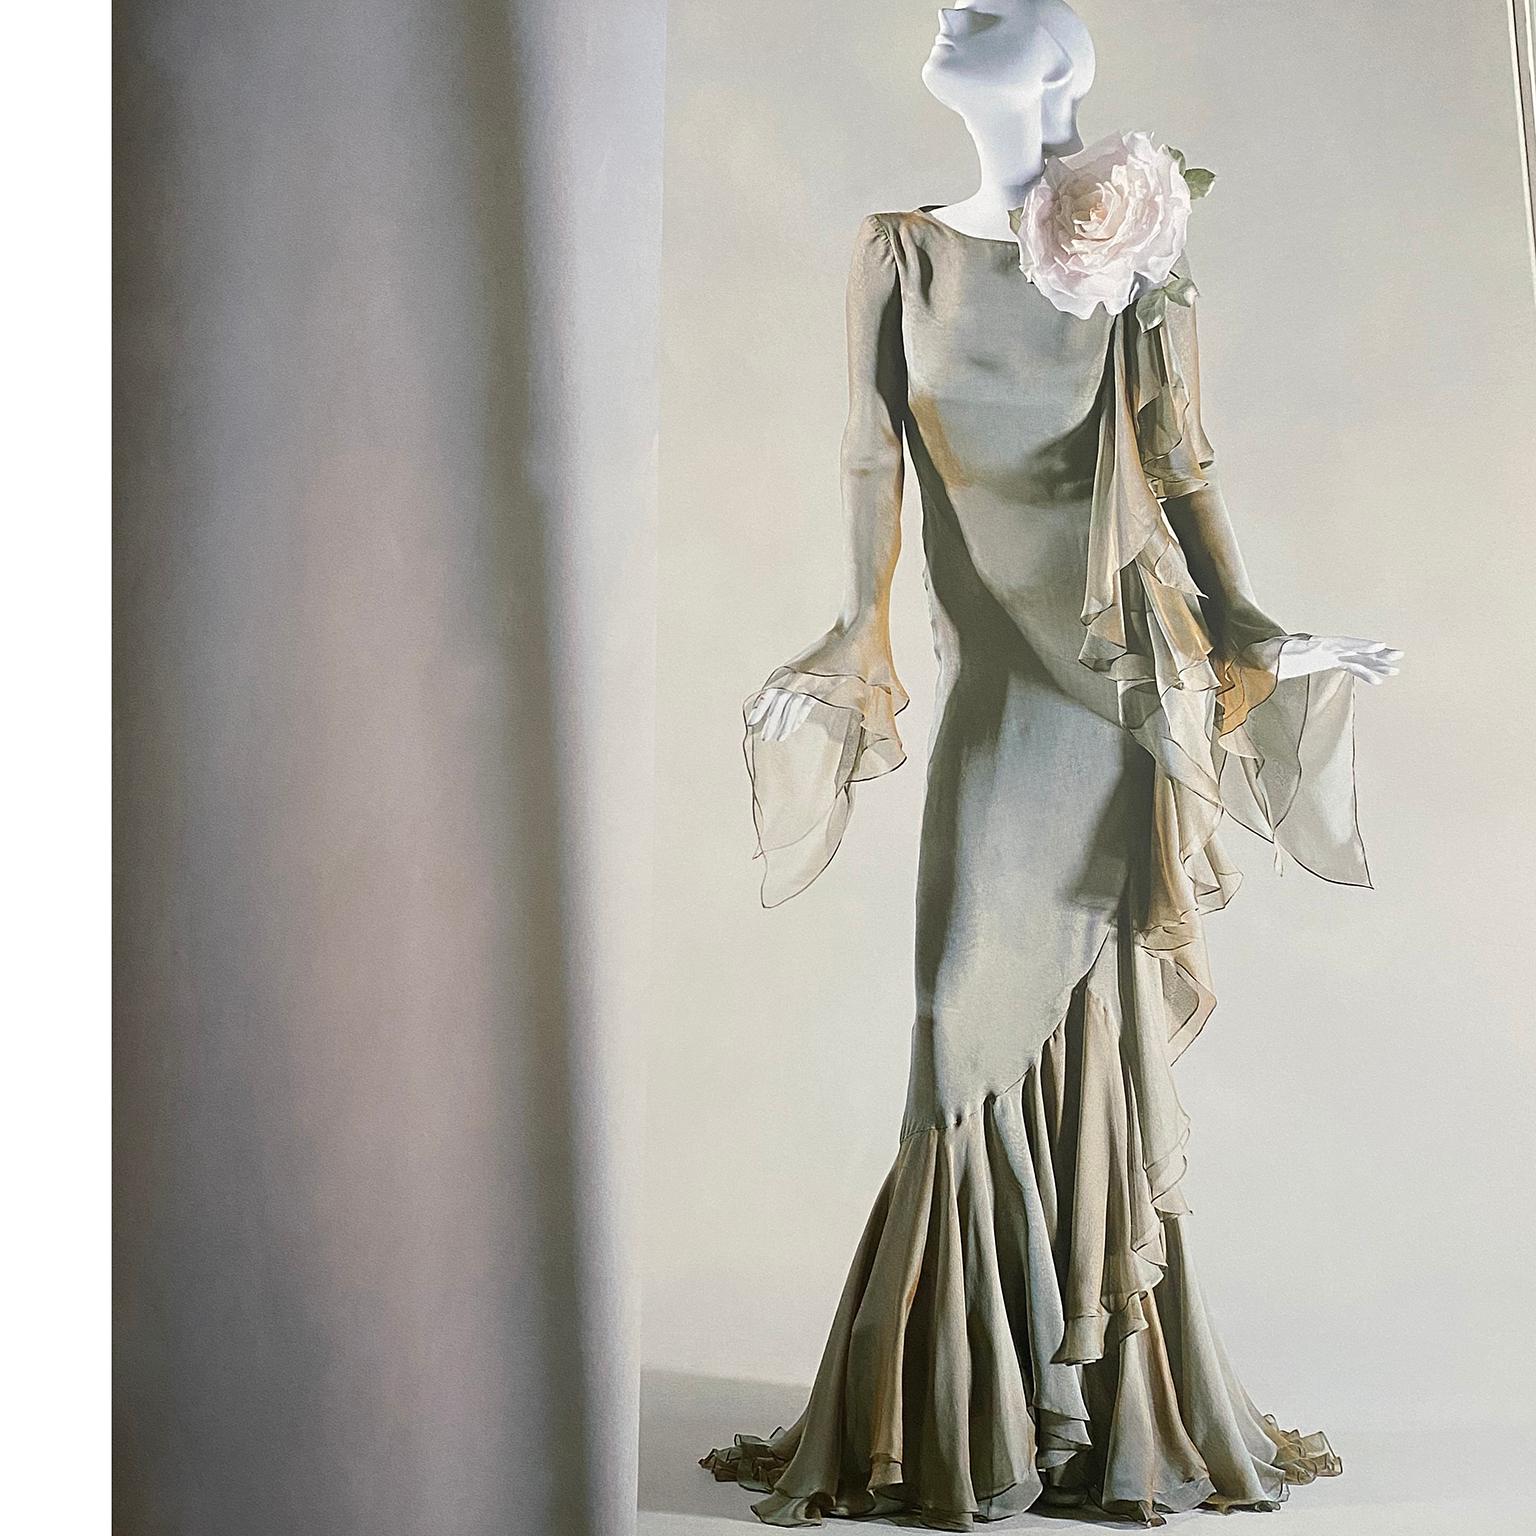 Nous adorons cette sensationnelle robe Bill Blass vintage 1993 en mousseline de soie fine avec une doublure chair/pêche et une superposition de mousseline vert sauge. L'effet est celui d'une irisation de bronze et de vert. Les jolis volants tombent